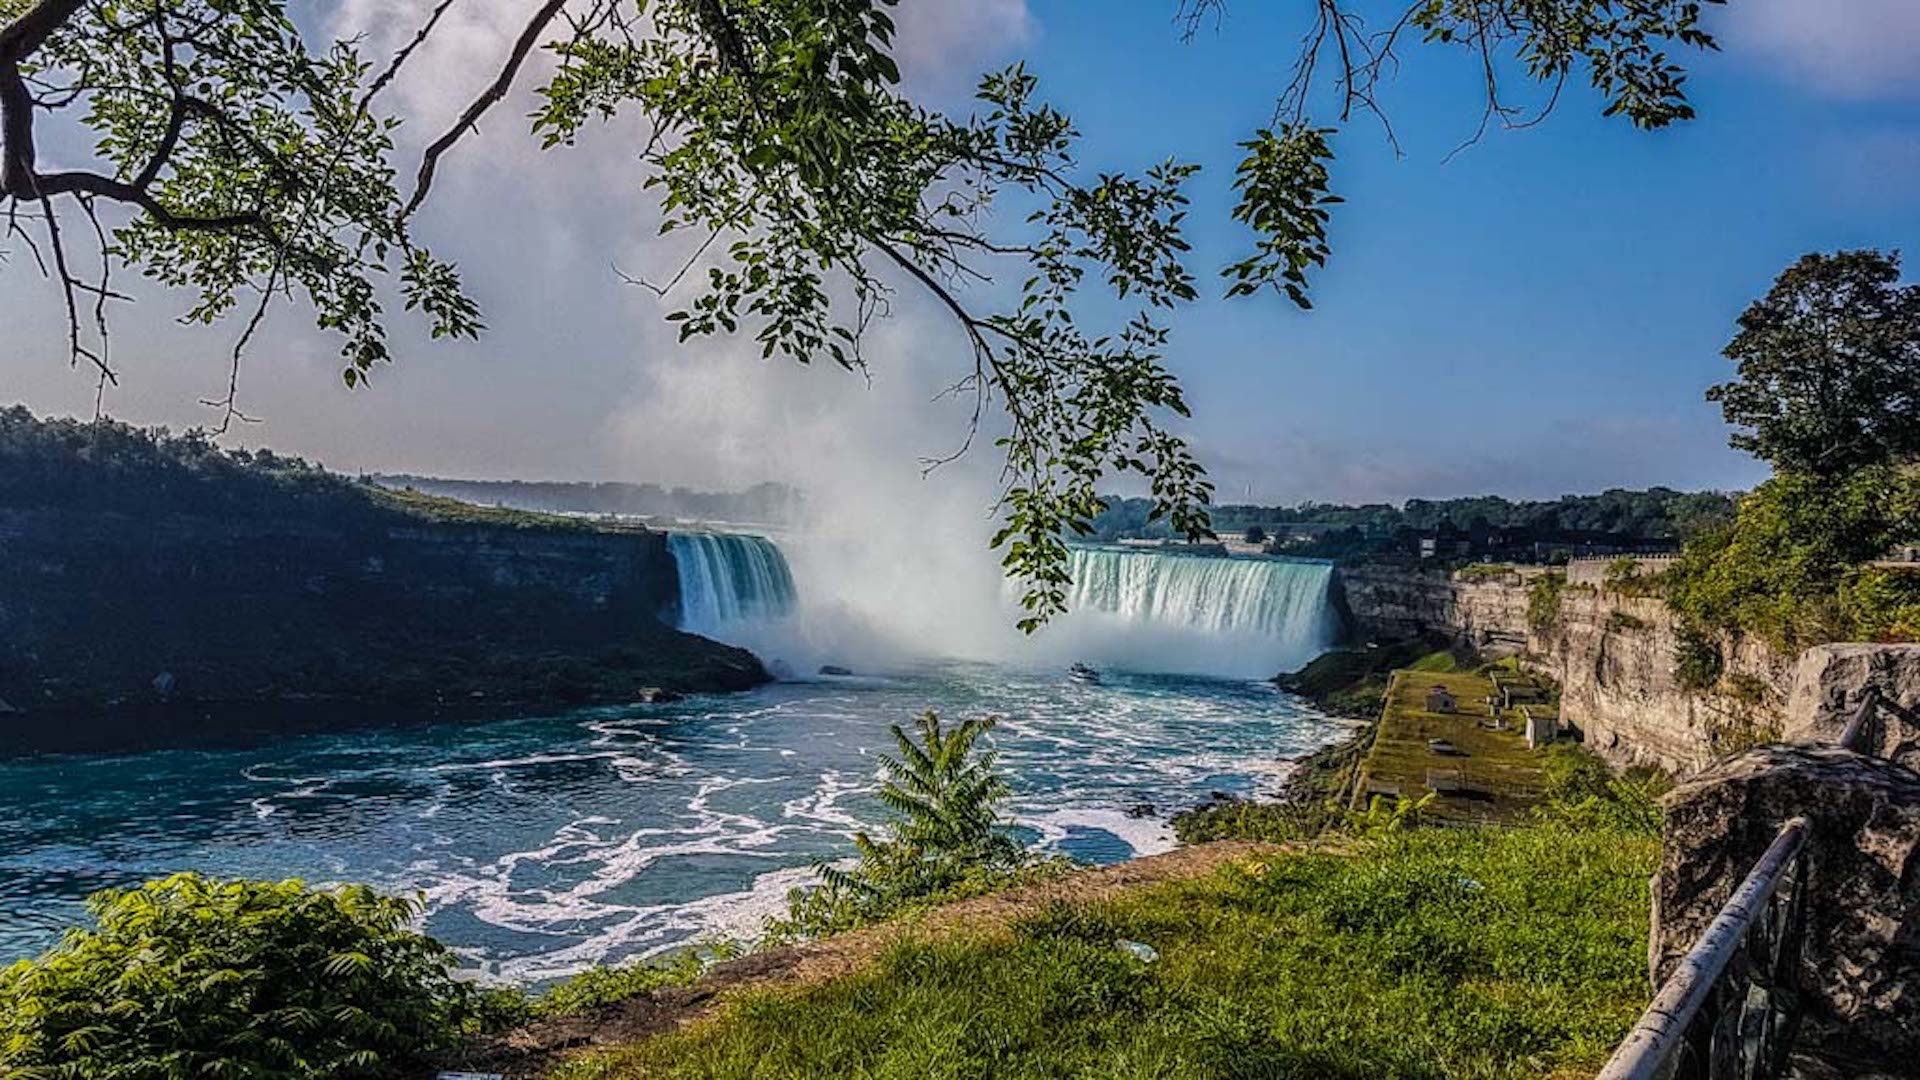 Roteiro no Canada de 7 dias: Toronto, Niagara Falls e Niagara on the Lake